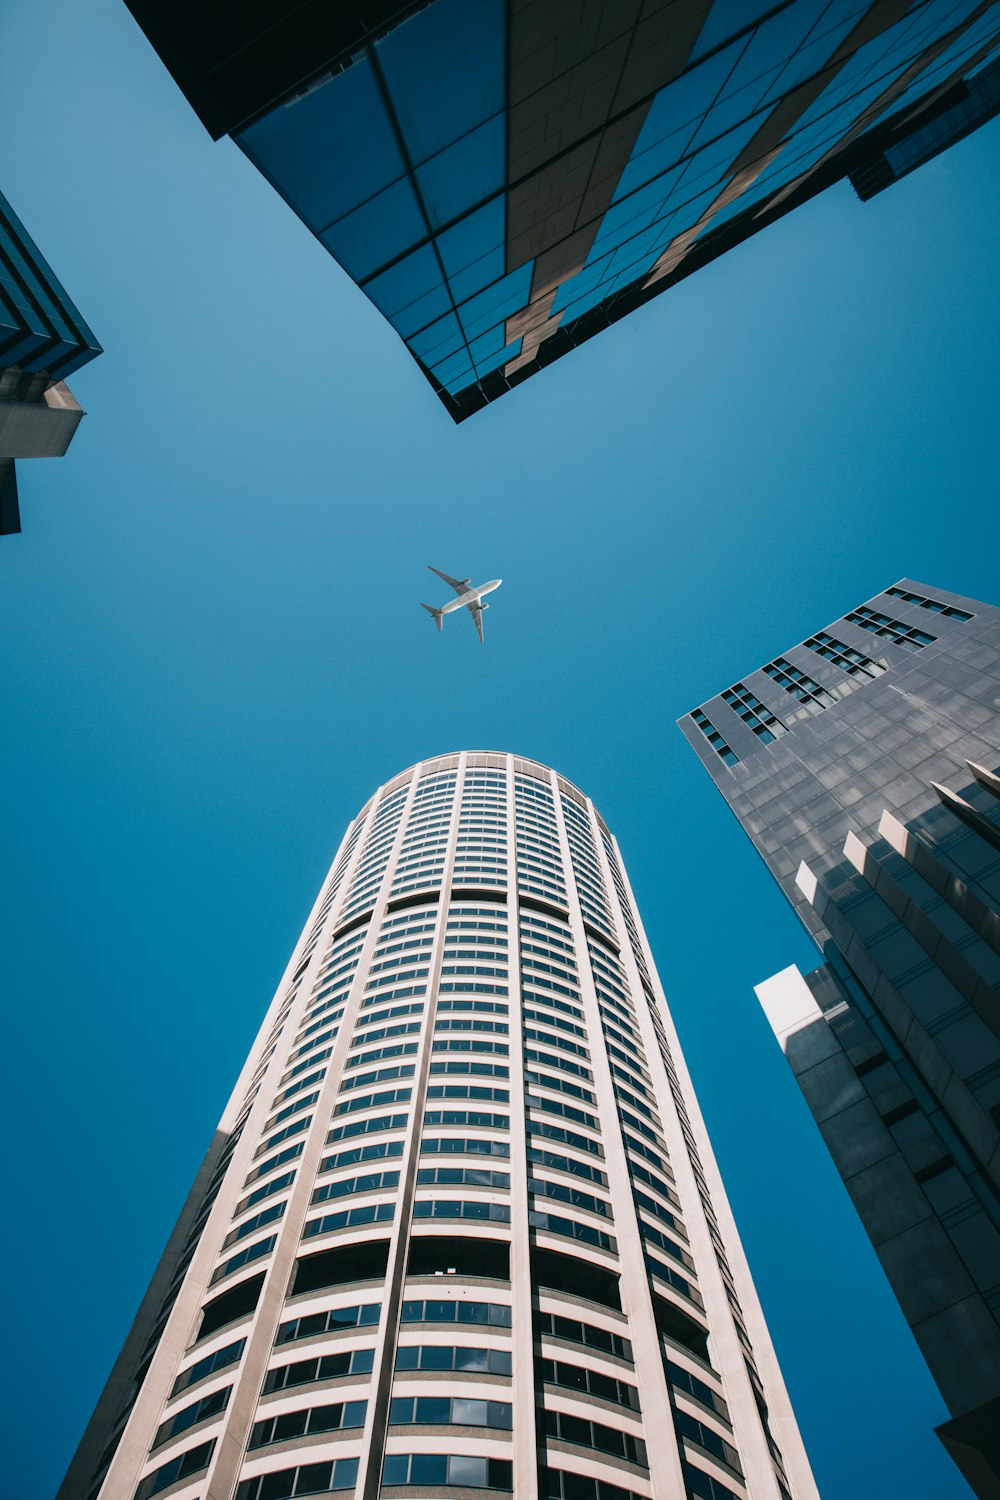 Un avión volando en el cielo sobre un edificio alto